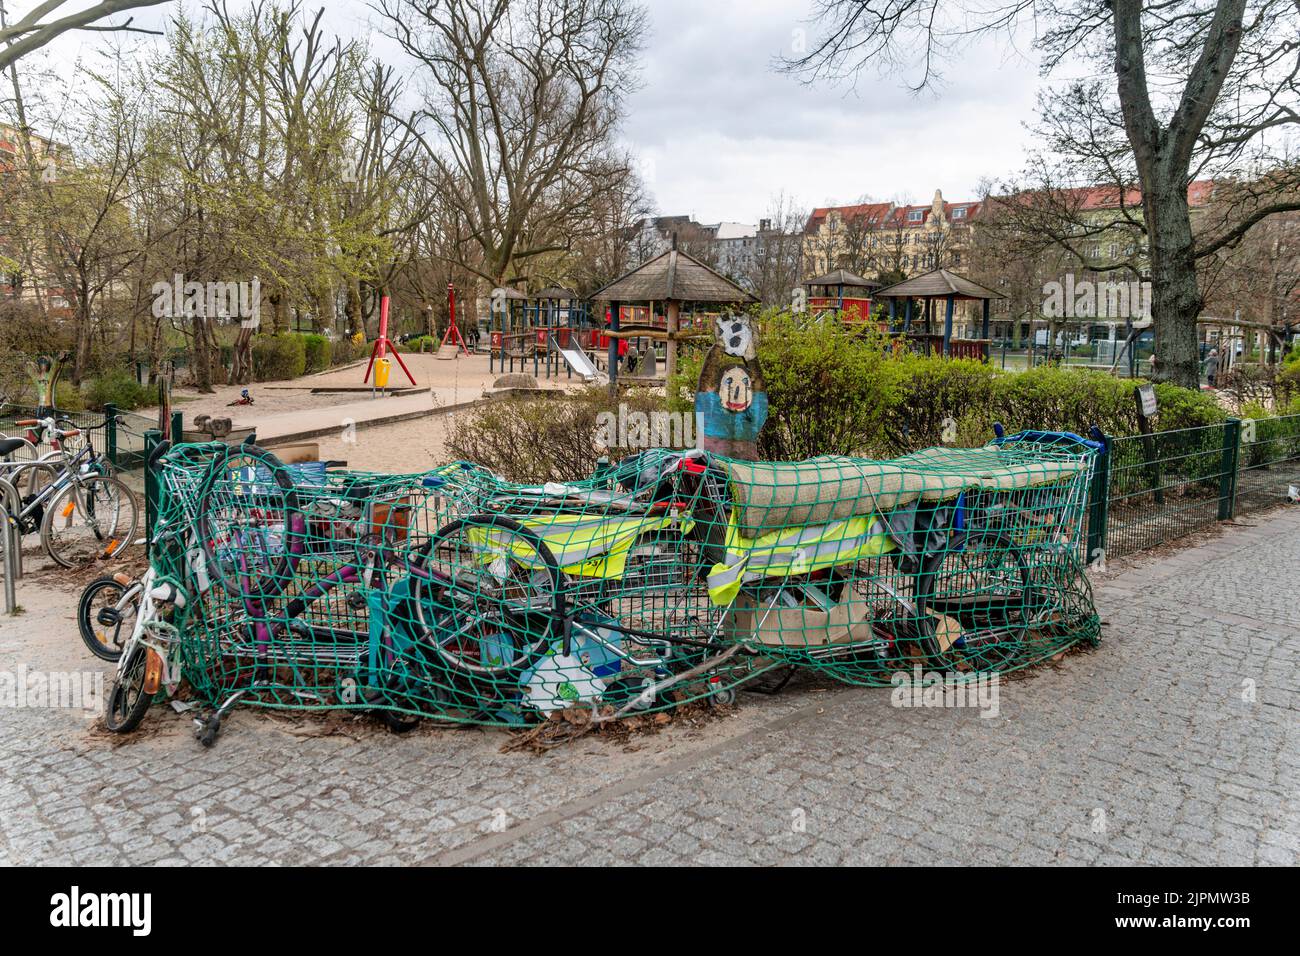 gesammelter Müll unter Netz am Spielplatz Weichselplatz in Neukölln, Berlin Stock Photo